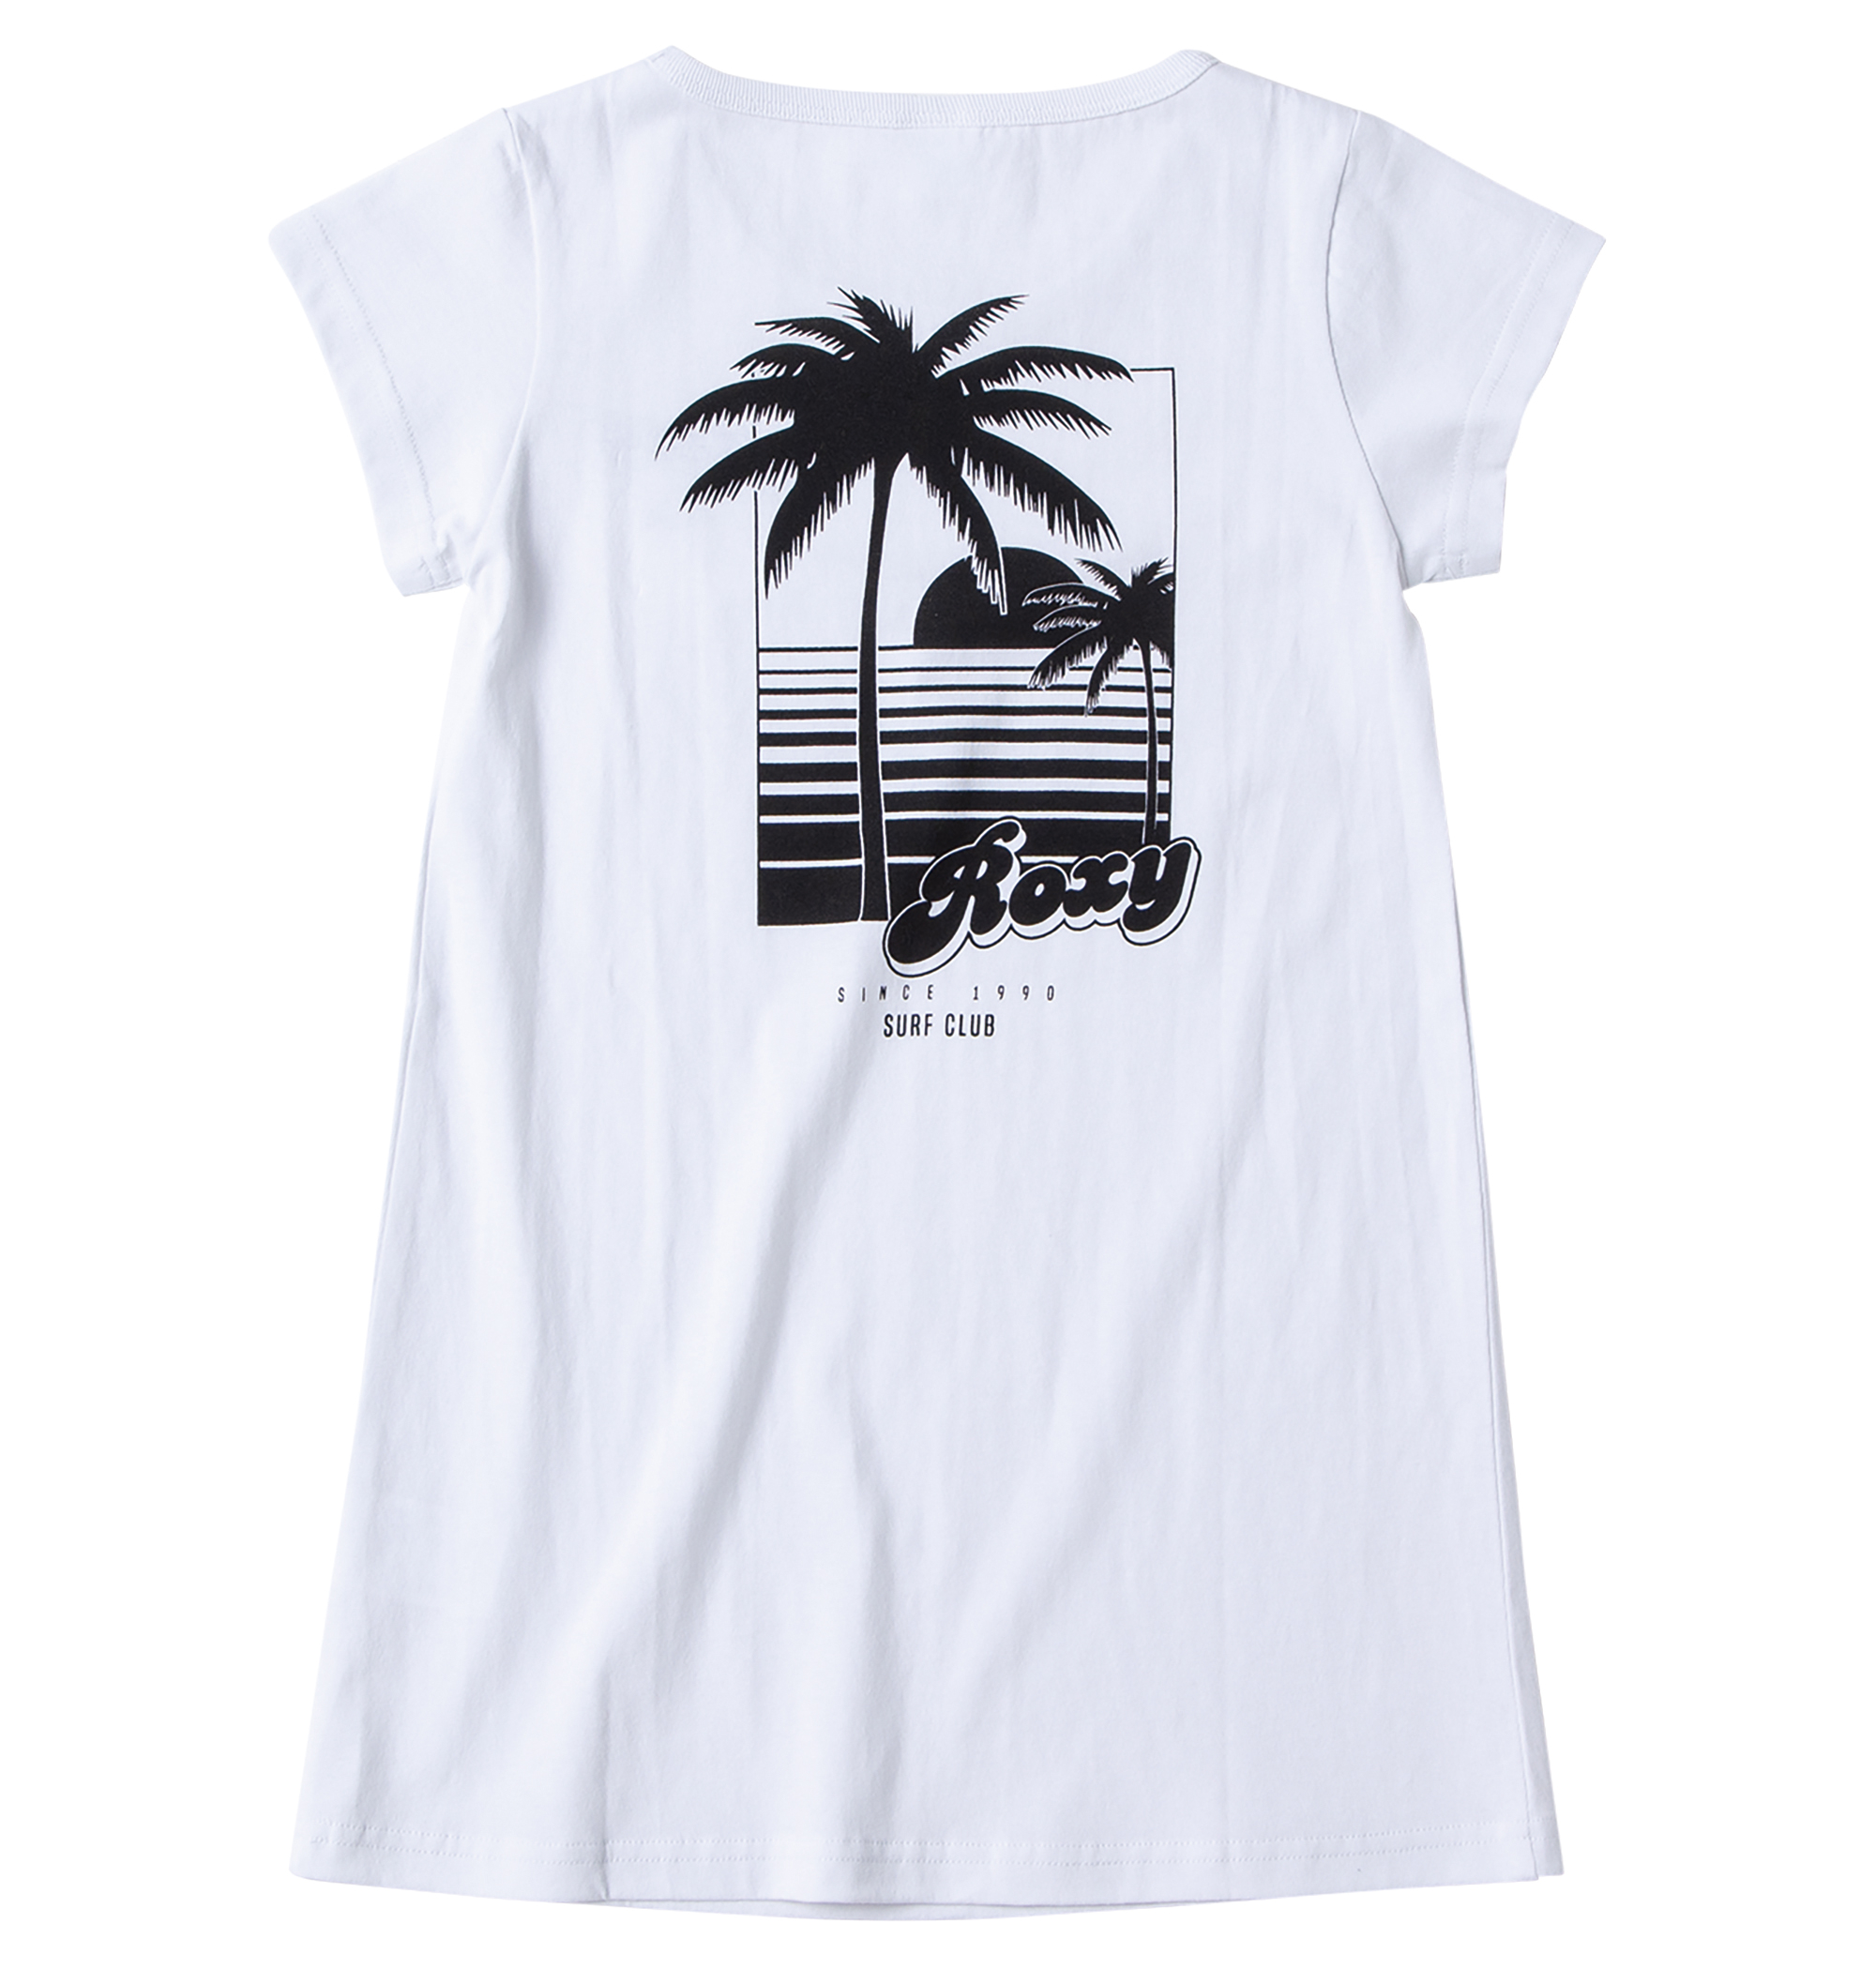 30%OFF！MINI SURF CLUB リゾート感漂うバックプリントがROXYらしいアクセントを創り出してくれるTシャツ